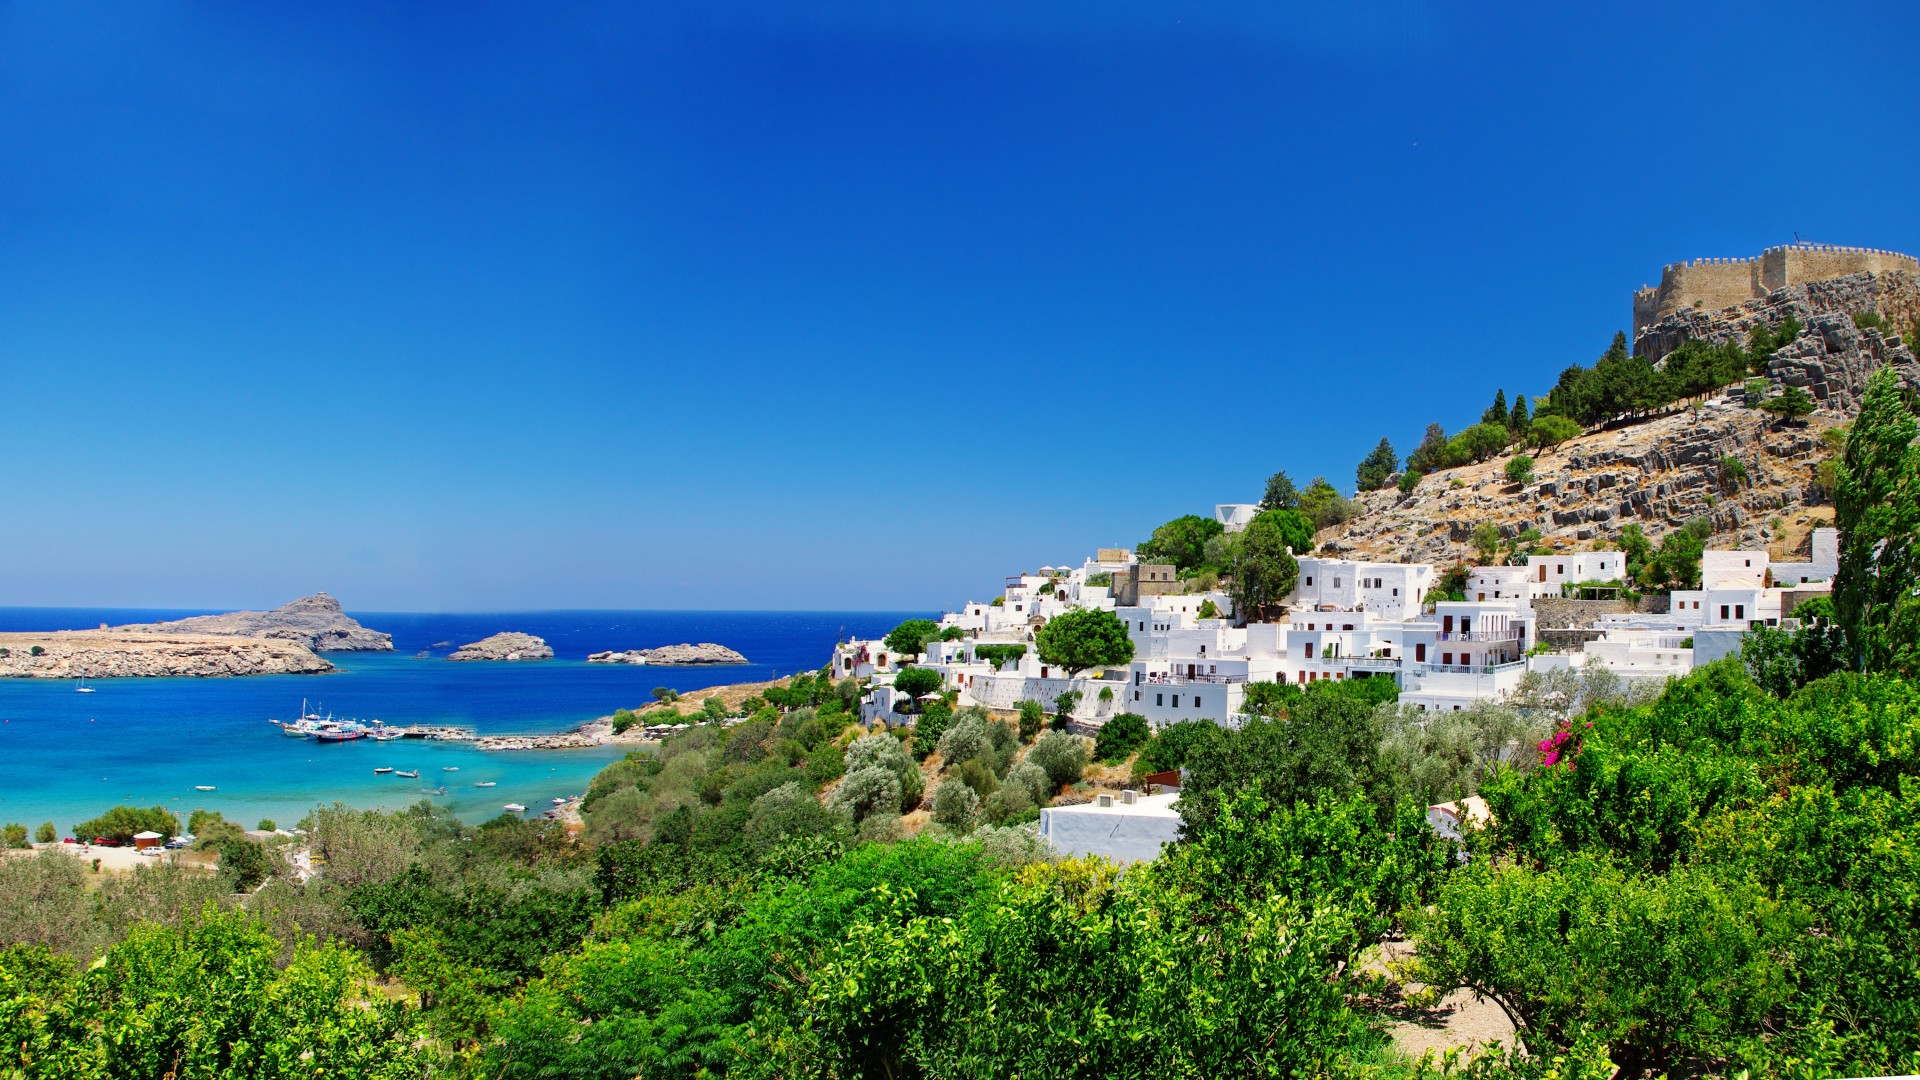 希腊,城堡,海岸,蓝色天空,风景桌面壁纸高清大图预览1920x1080